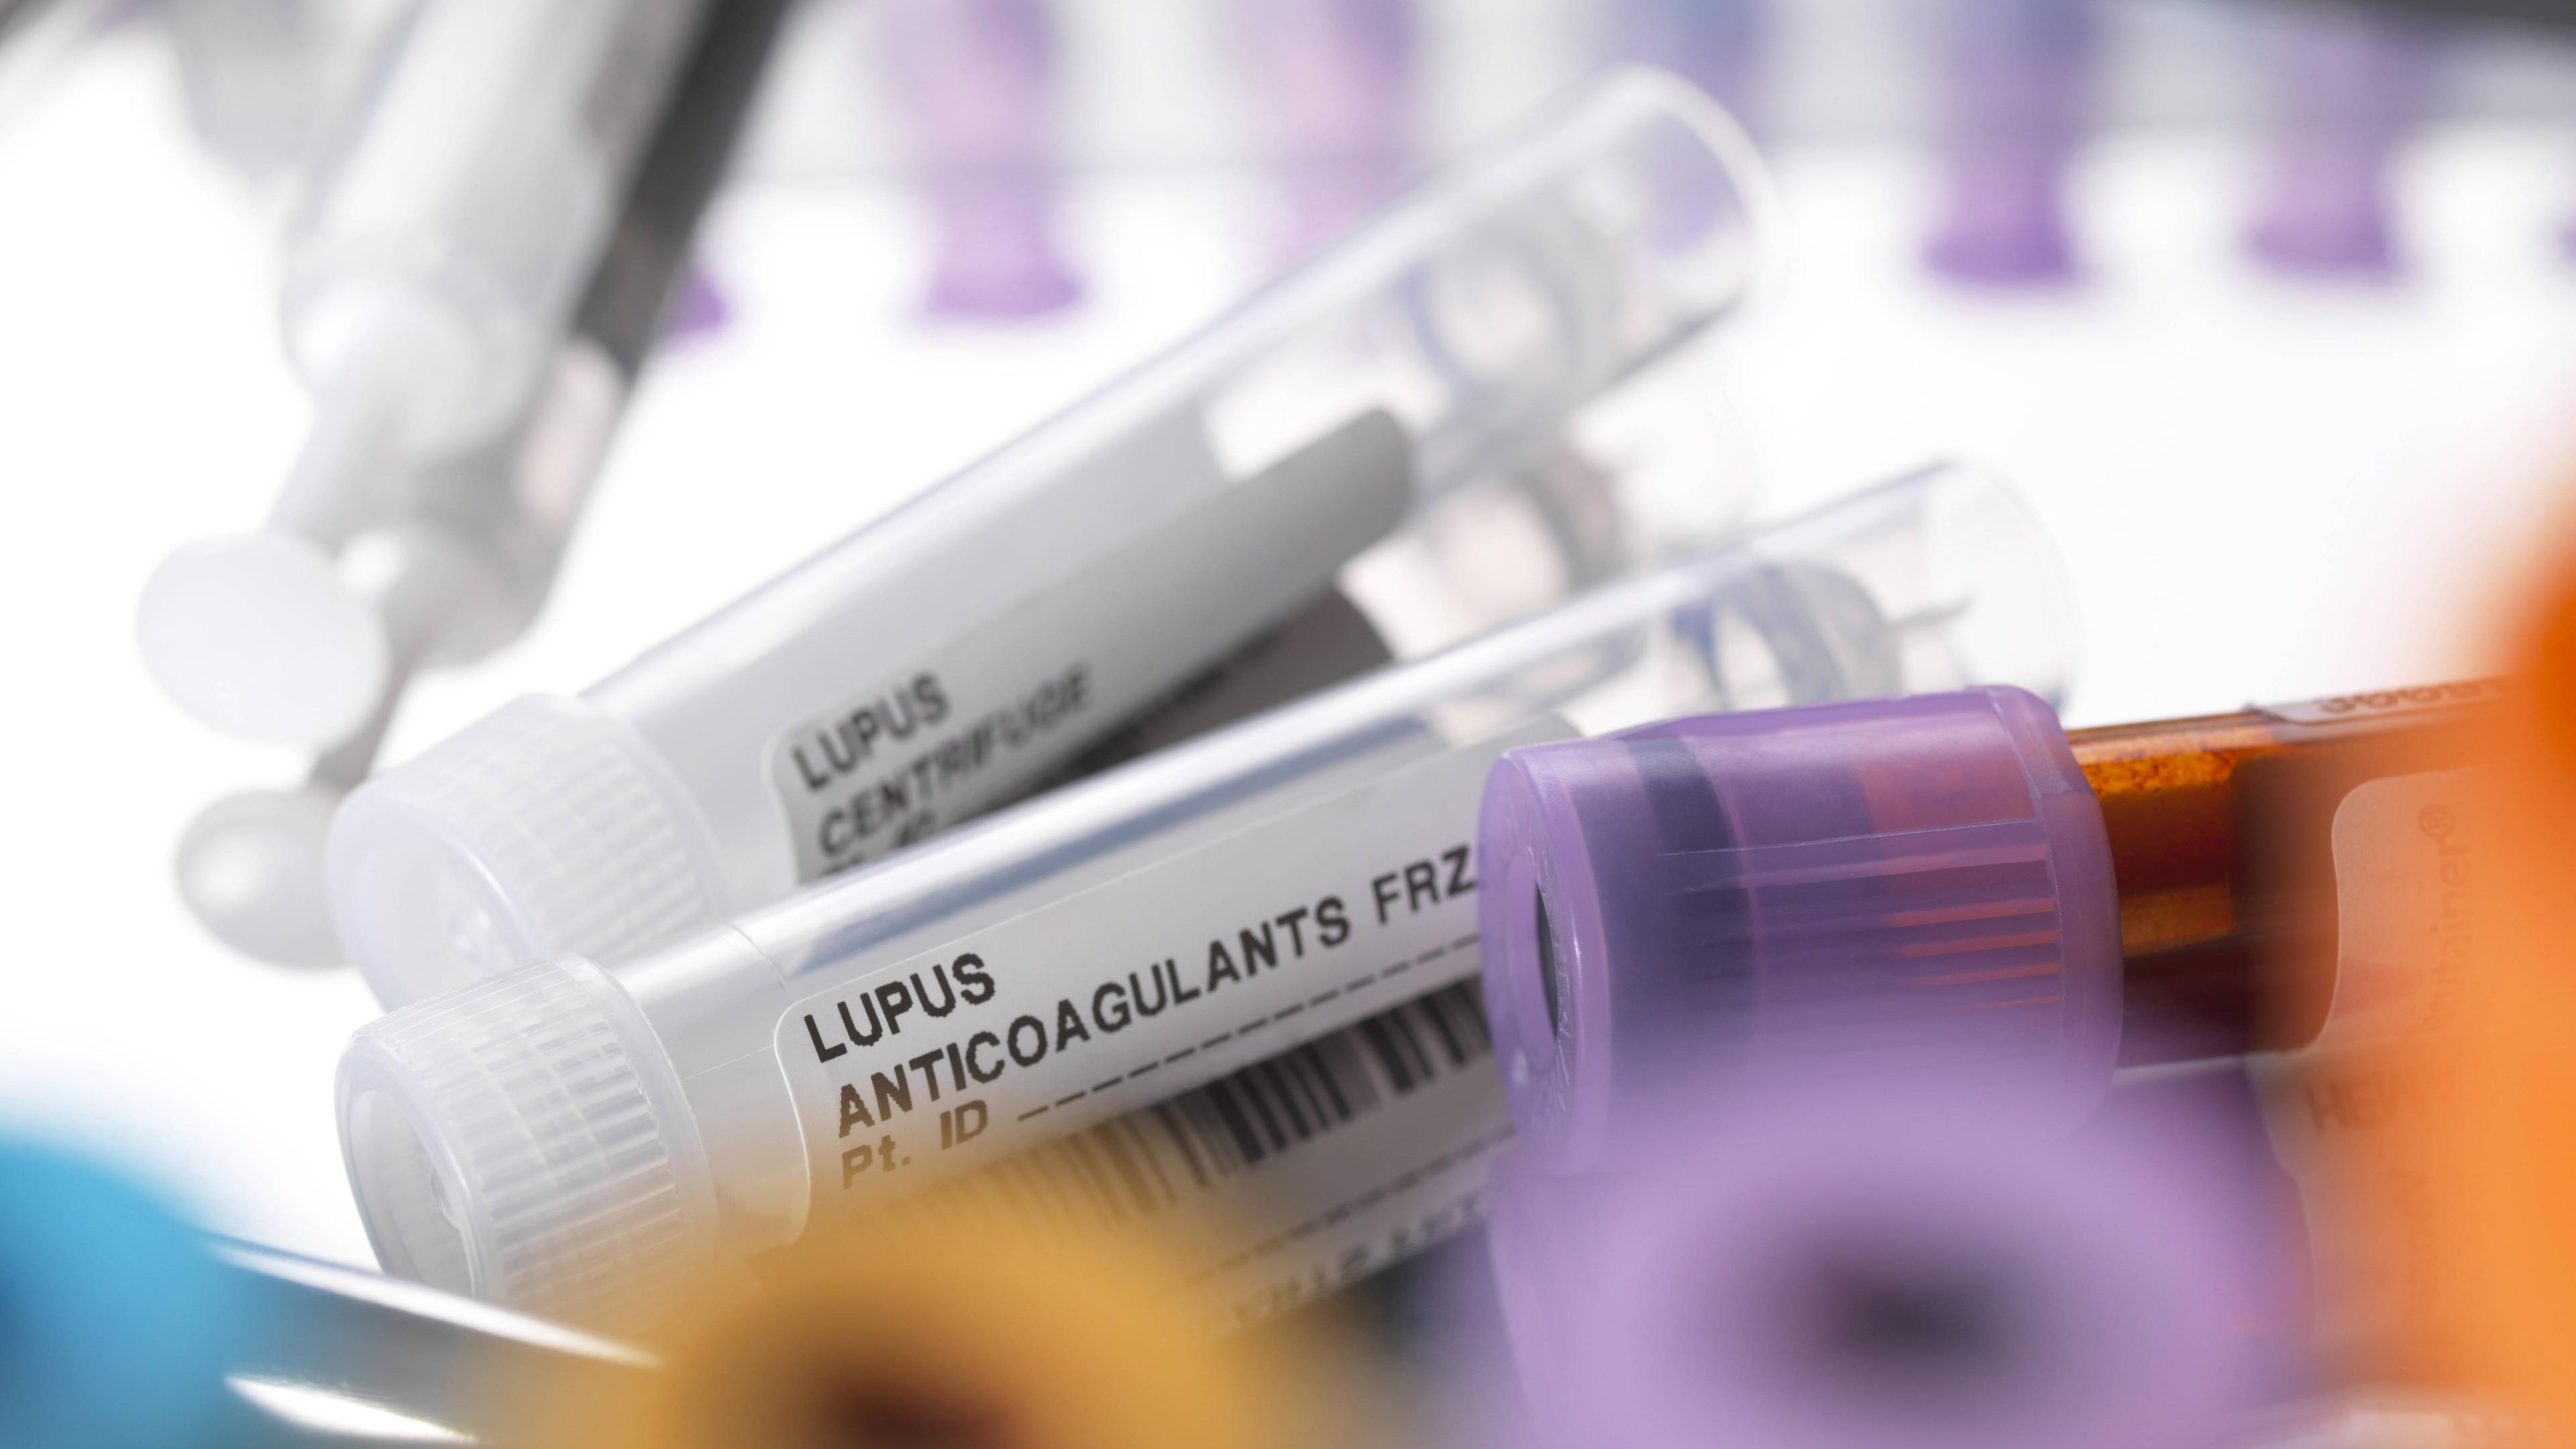 Zwei medizinische Röhren mit der Aufschrift "Lupus Anticoagulants" in einer Laborumgebung.